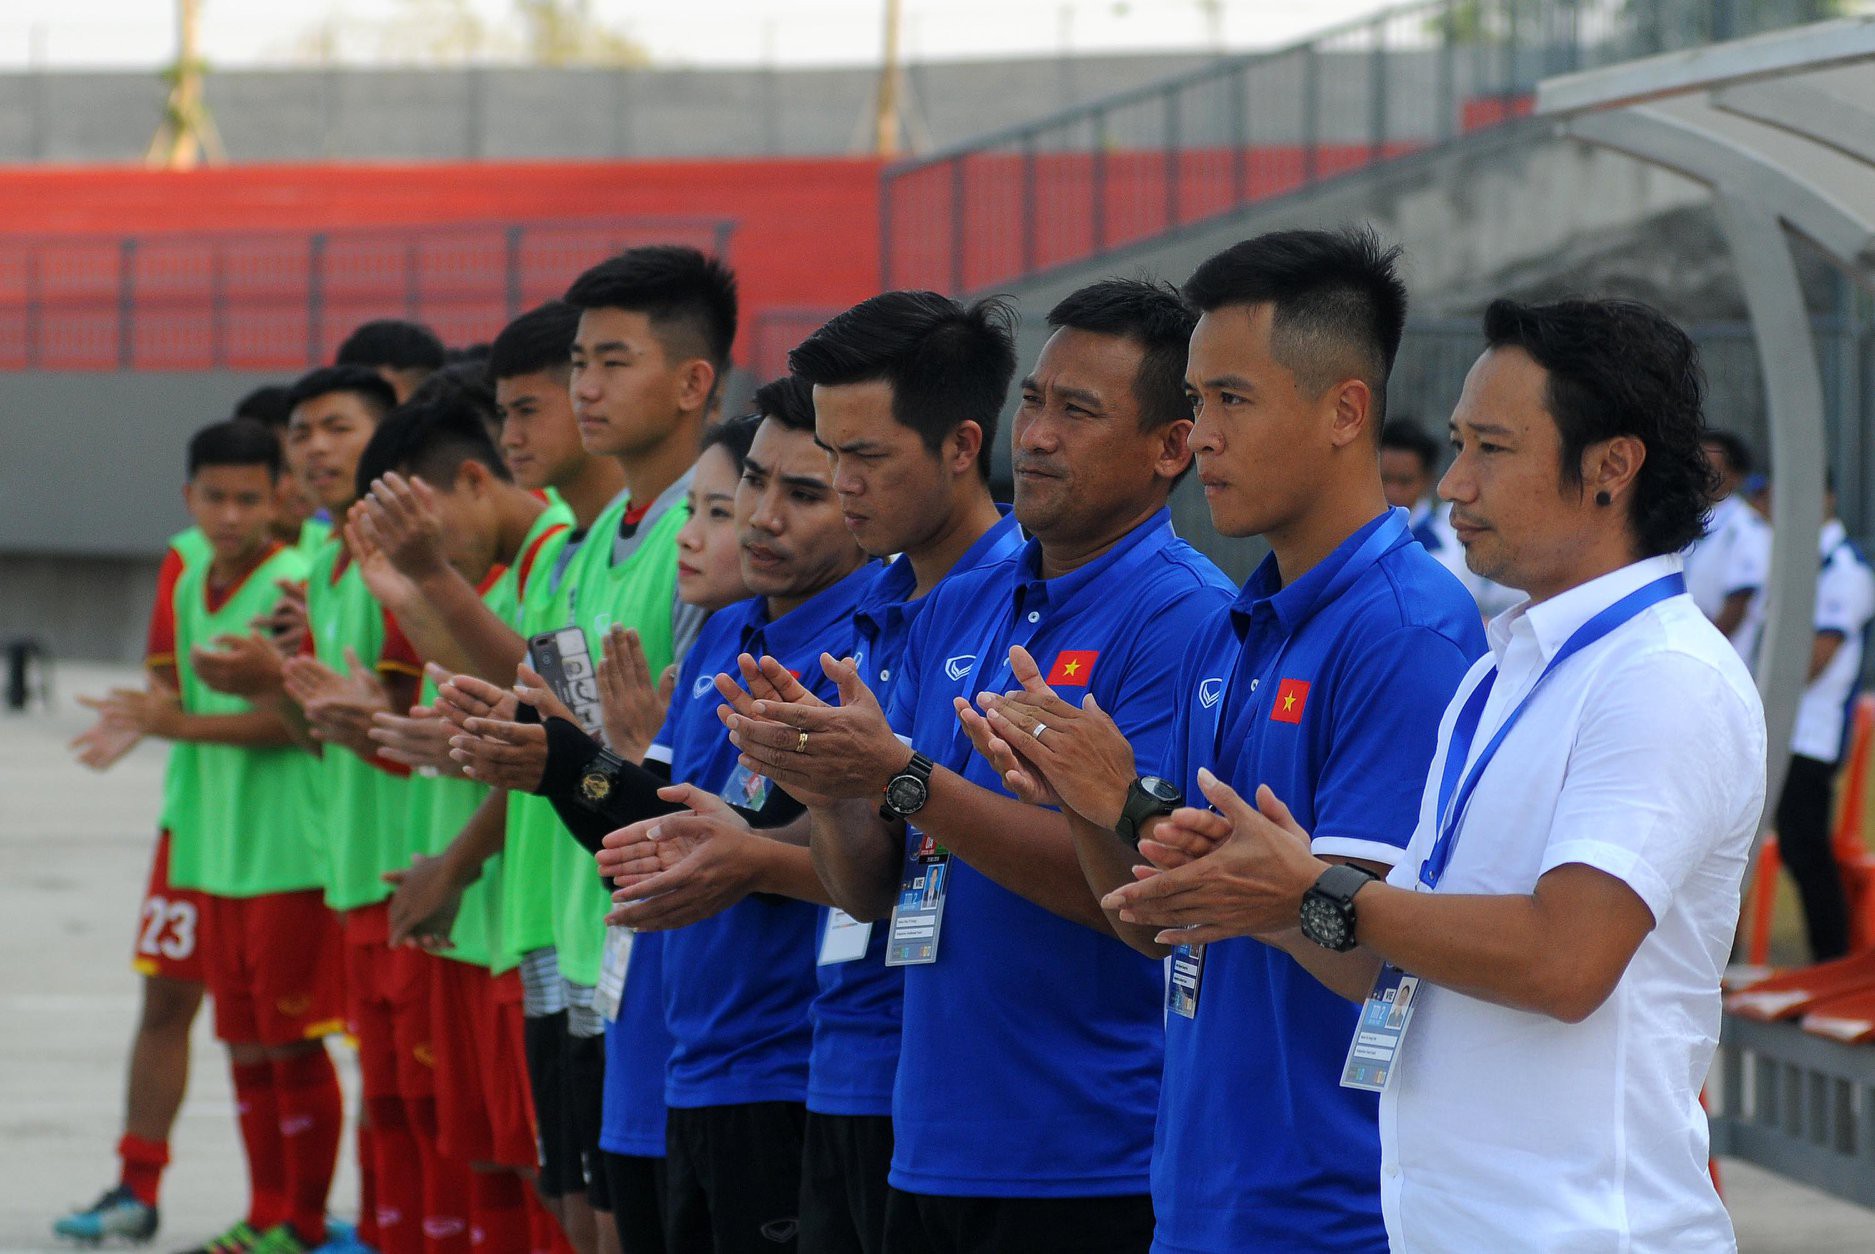 HLV Vũ Hồng Việt thừa nhận lối chơi của U16 Việt Nam chưa thuyết phục - Ảnh 1.